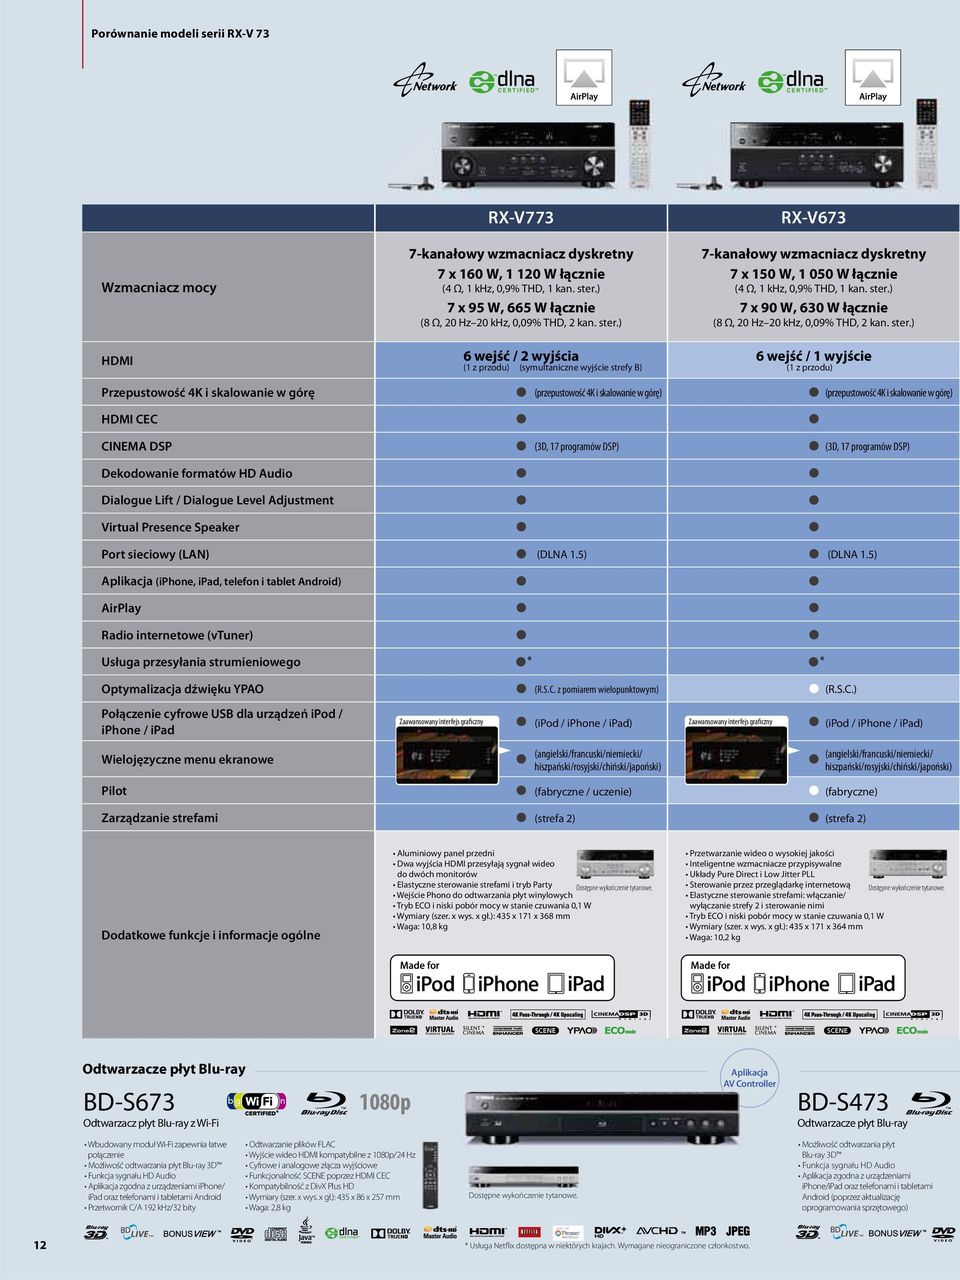 ster.) HDMI 6 wejść / 2 wyjścia (1 z przodu) (symultaniczne wyjście strefy B) 6 wejść / 1 wyjście (1 z przodu) Przepustowość 4K i skalowanie w górę (przepustowość 4K i skalowanie w górę) HDMI CEC